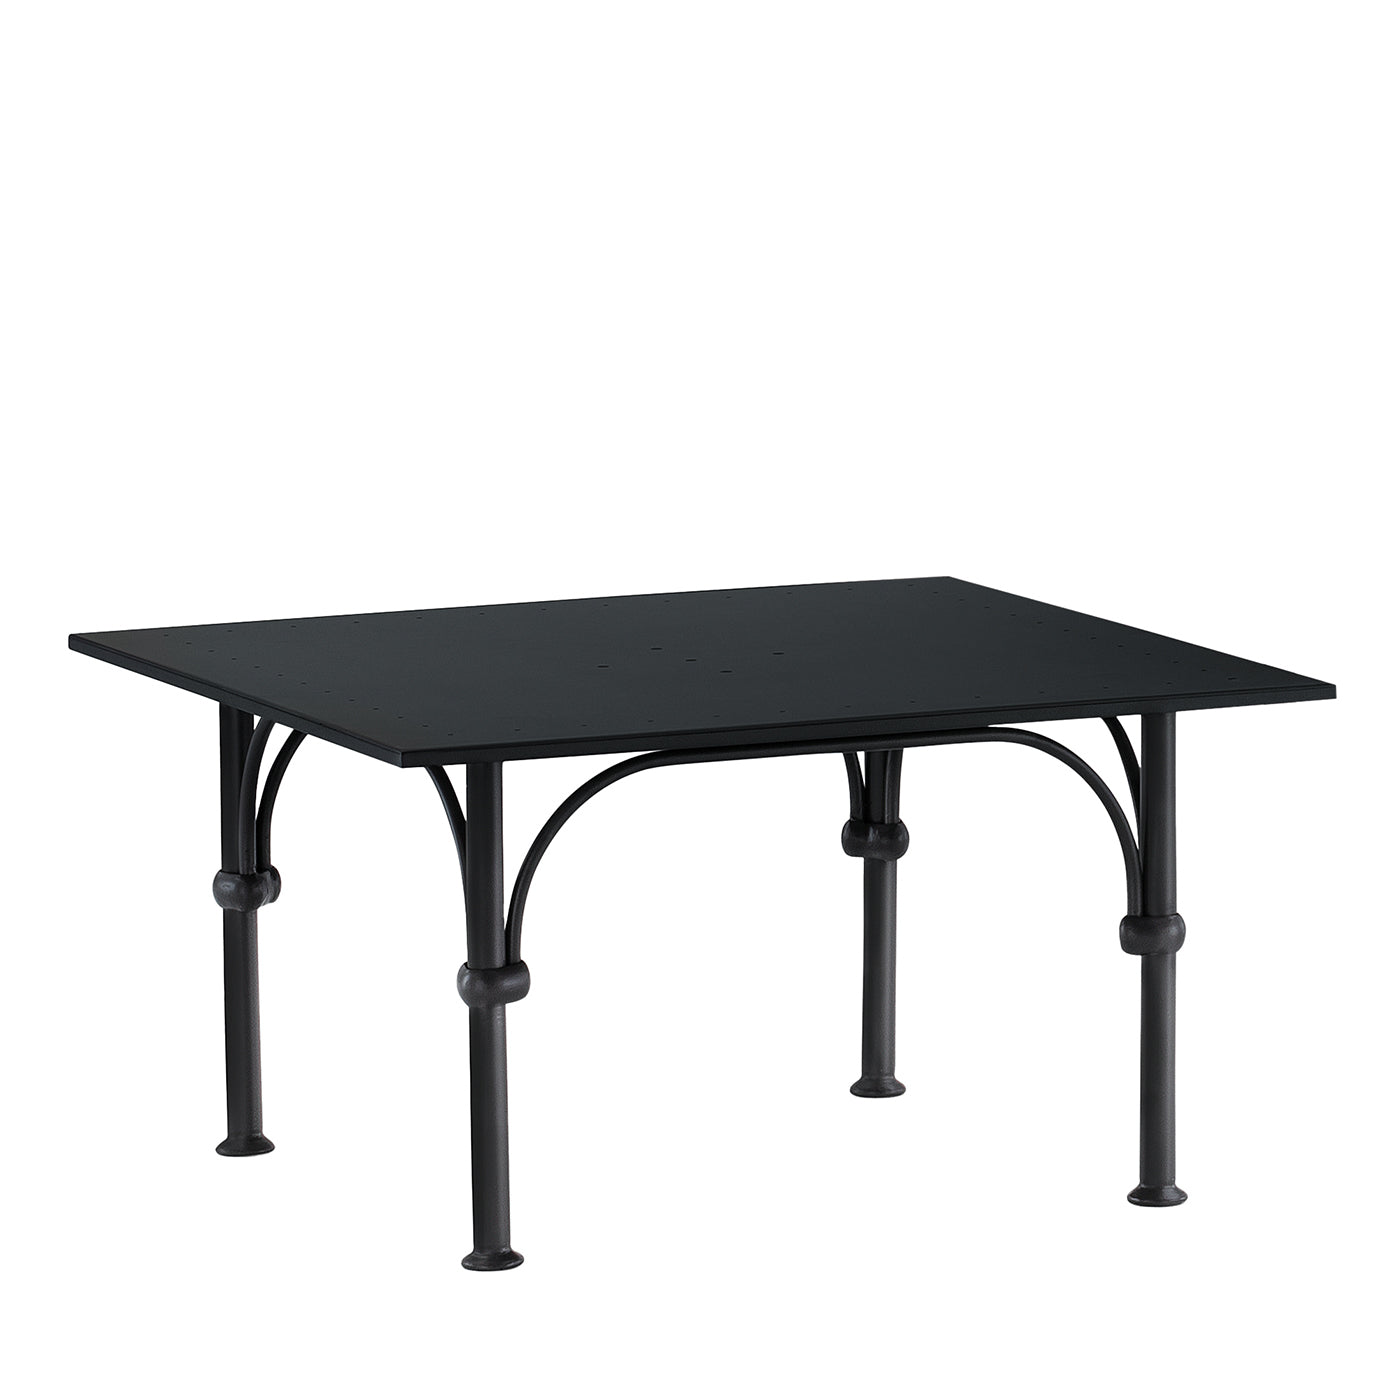 Tavolario Table basse carrée en fer forgé gris anthracite - Vue principale